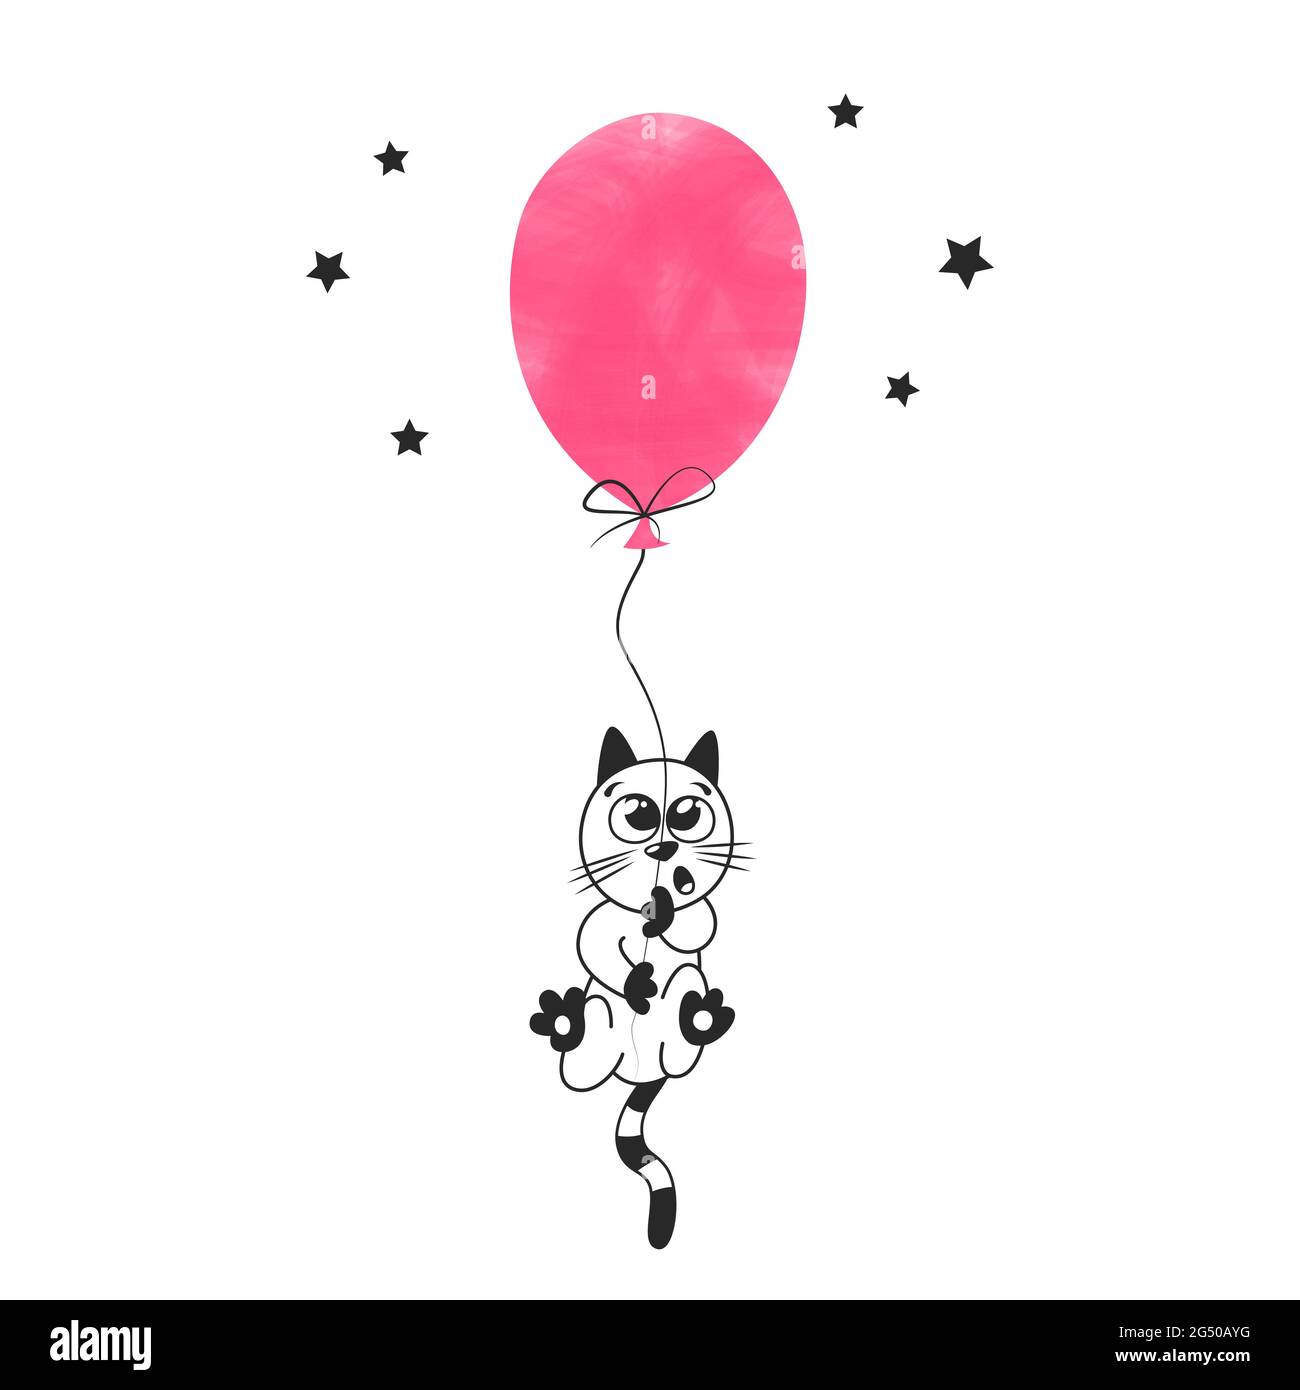 Schöne Pastellillustration für Kinderzimmer Poster Design. Kleines niedliches Kätzchen fliegt auf einem rosa Ballon. Eine einfache Kinderzeichnung auf skandinavisch Stock Vektor